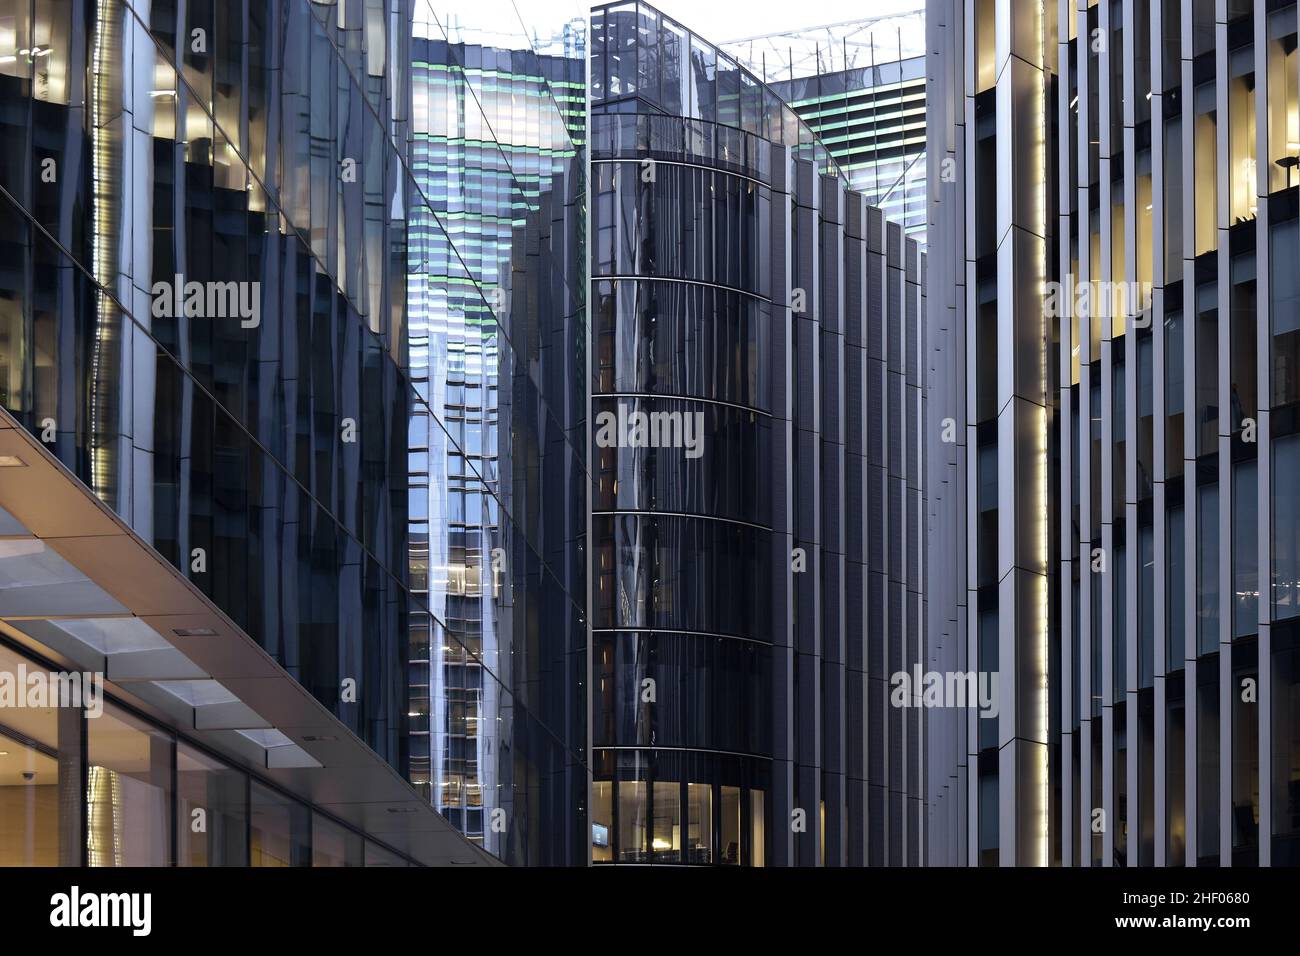 52 Lime Street et Willis Building - des immeubles de bureaux modernes façades de verre au crépuscule, situé dans la ville de Londres au Royaume-Uni. Banque D'Images